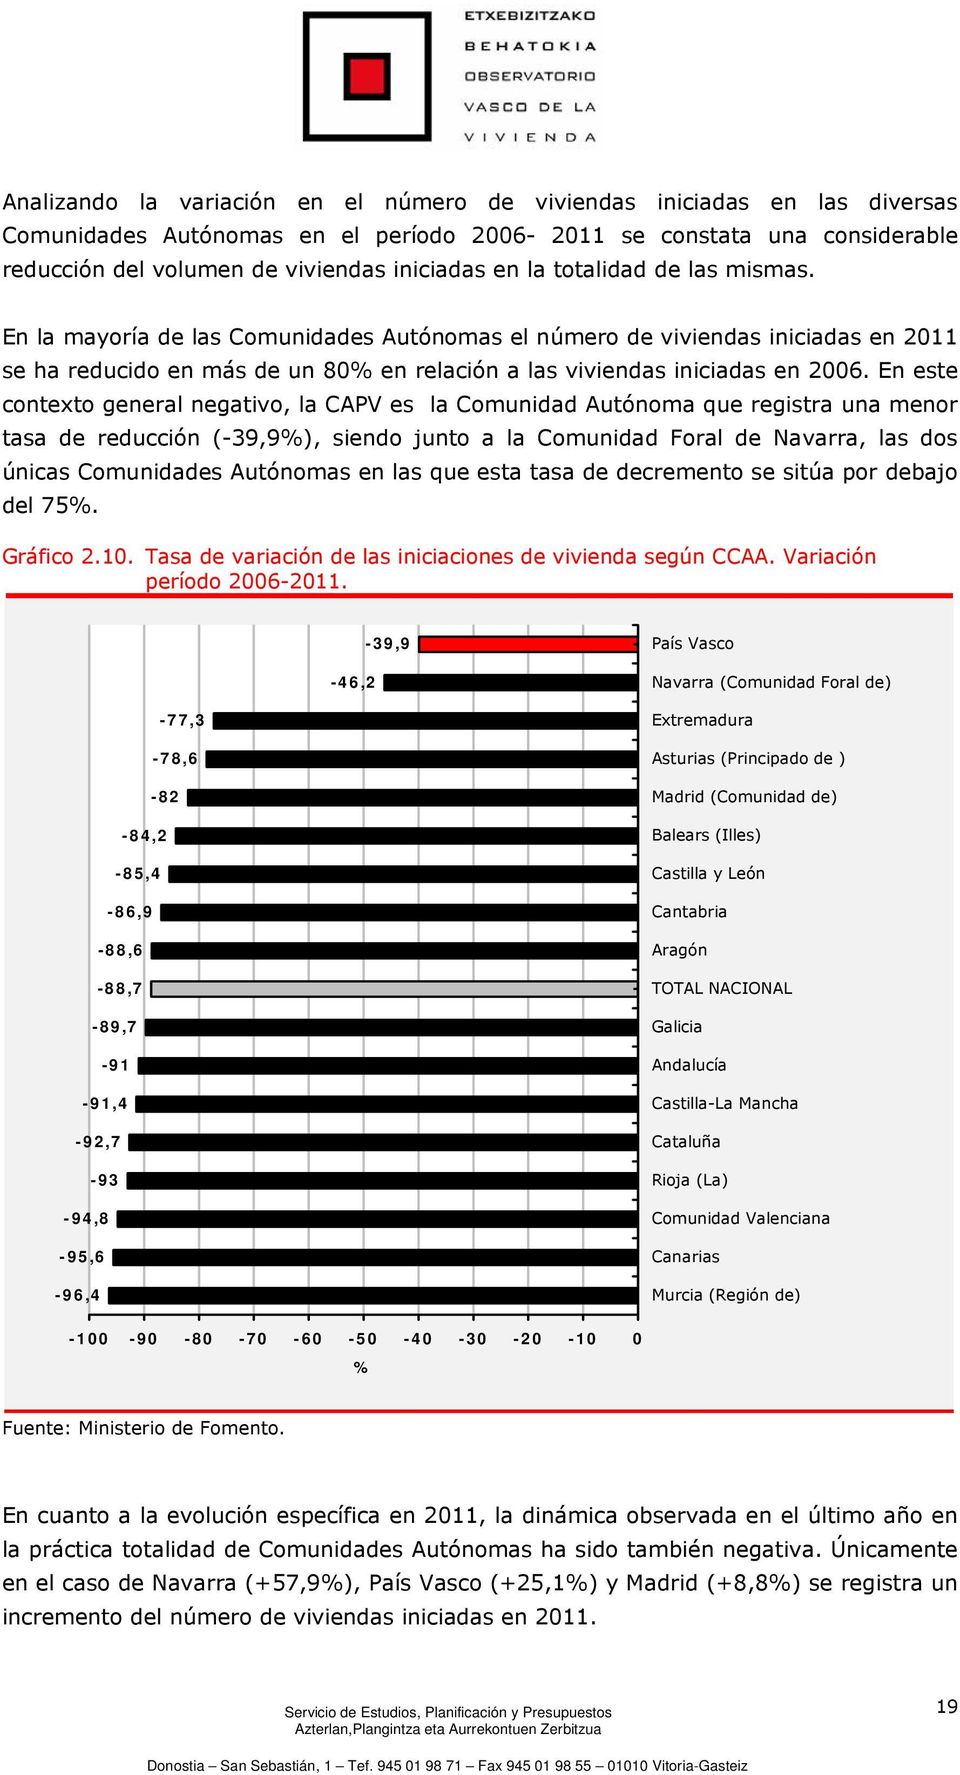 En este contexto general negativo, la CAPV es la Comunidad Autónoma que registra una menor tasa de reducción (-39,9%), siendo junto a la Comunidad Foral de Navarra, las dos únicas Comunidades